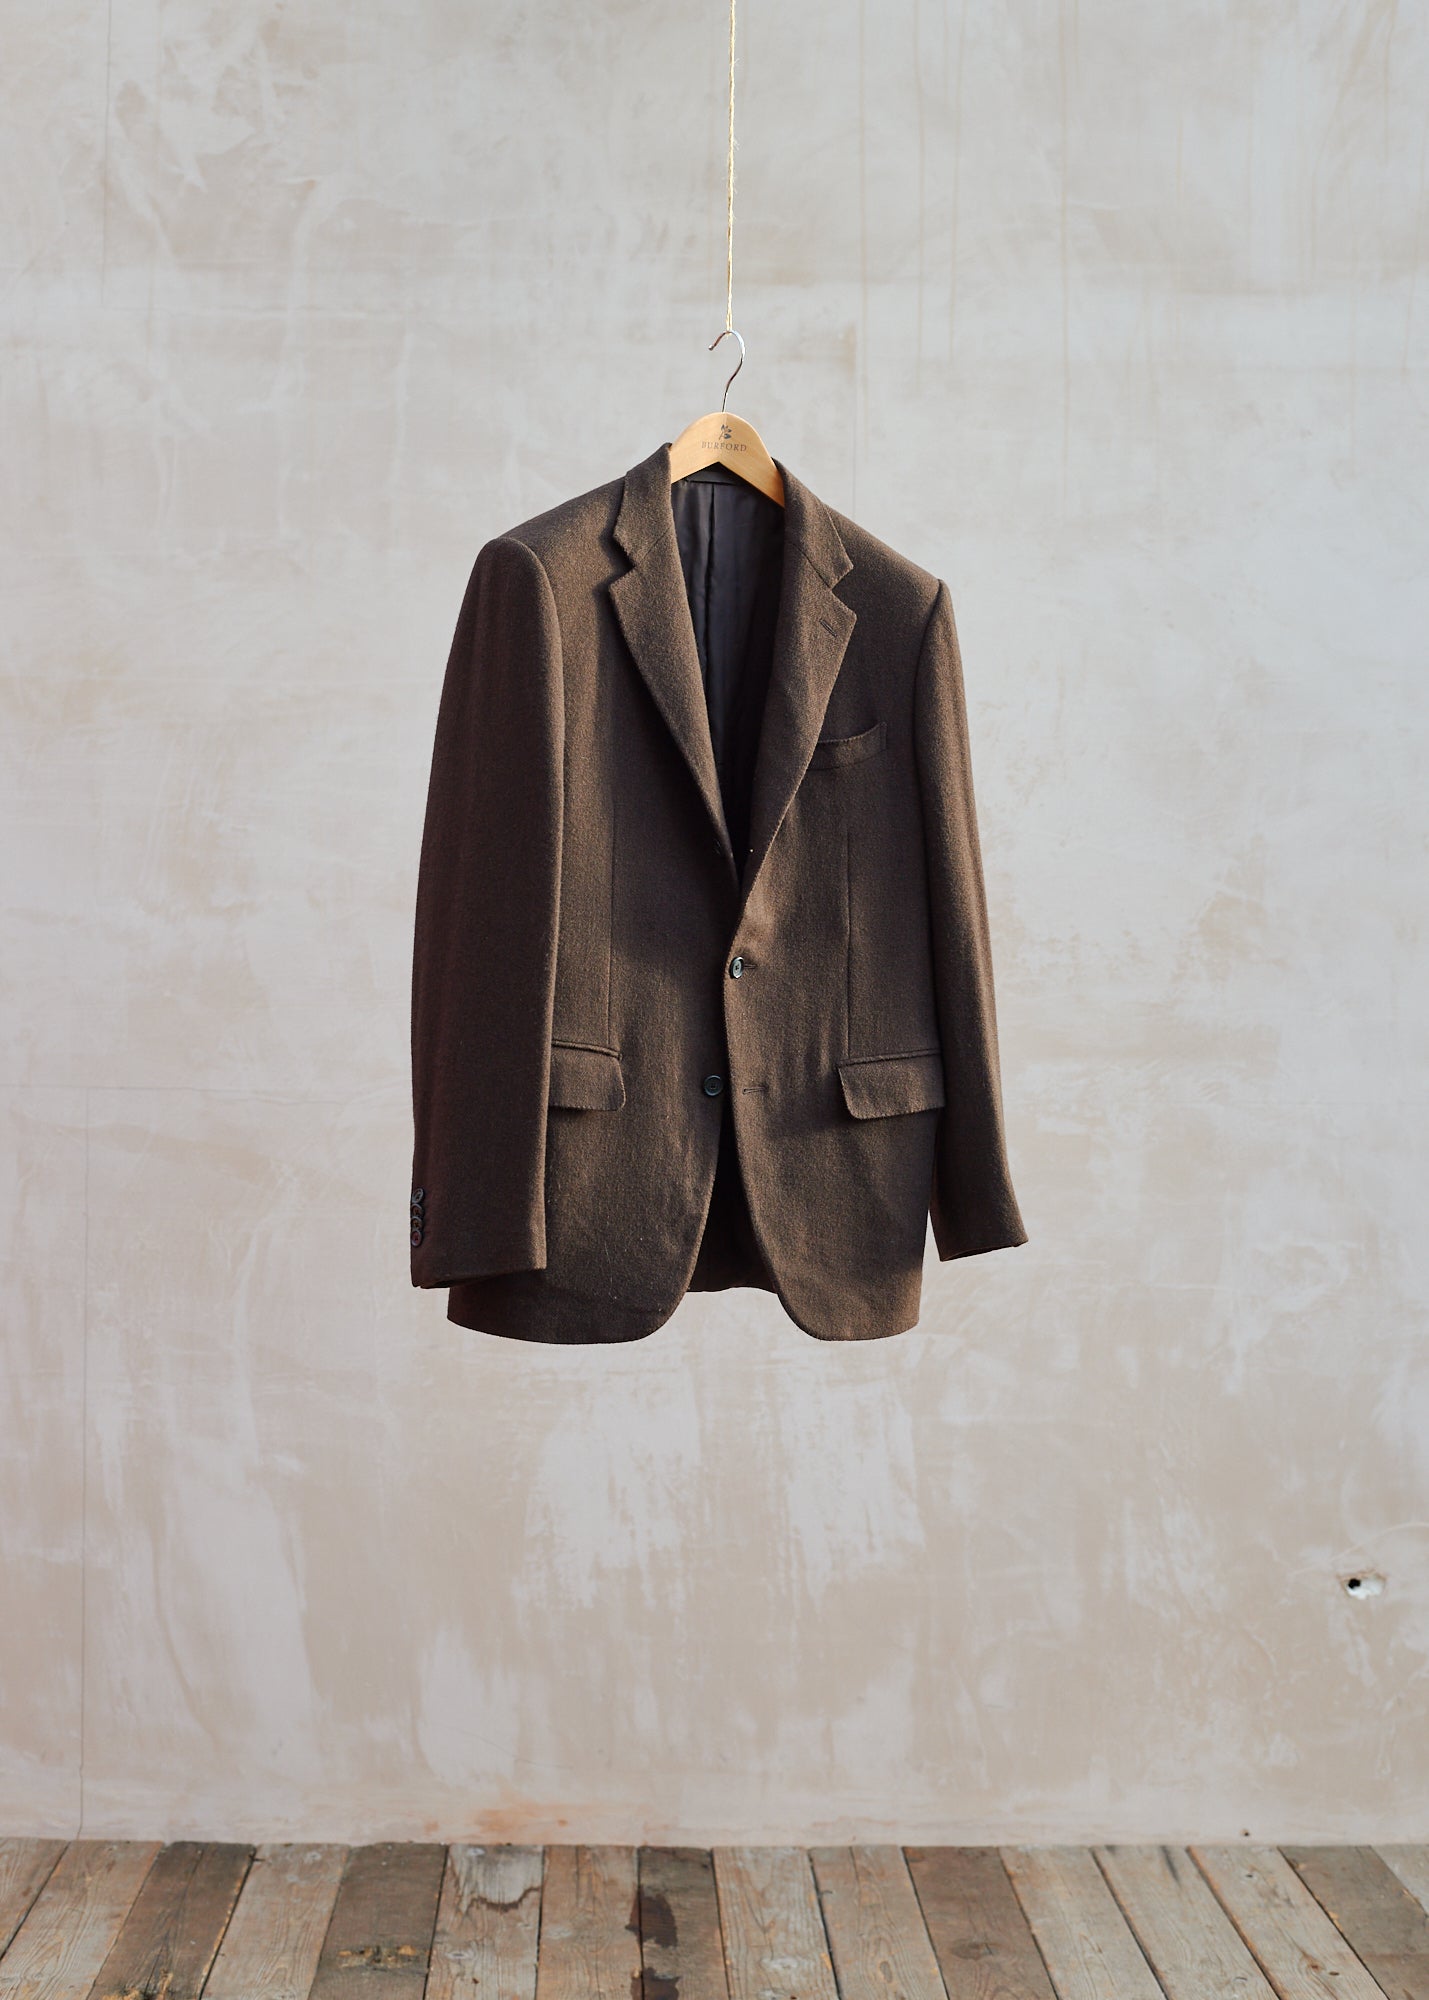 Caruso Brown Wool/Cashmere 3-Button Blazer - M